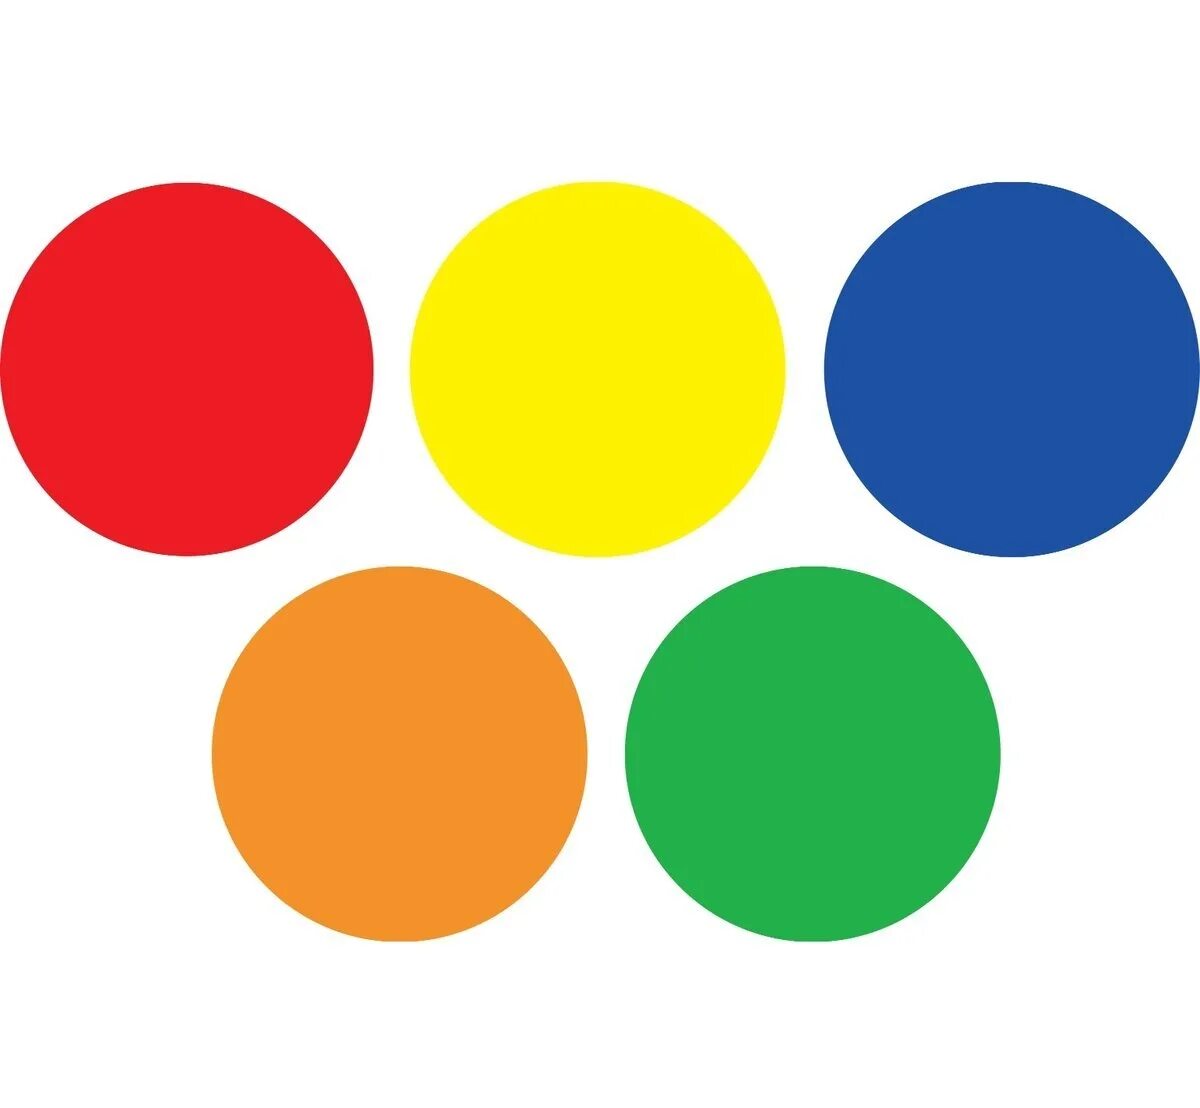 Круги маленькие много. Цветной круг. Разноцветные круги. Круги разных цветов. Крупные разноцветные круги.